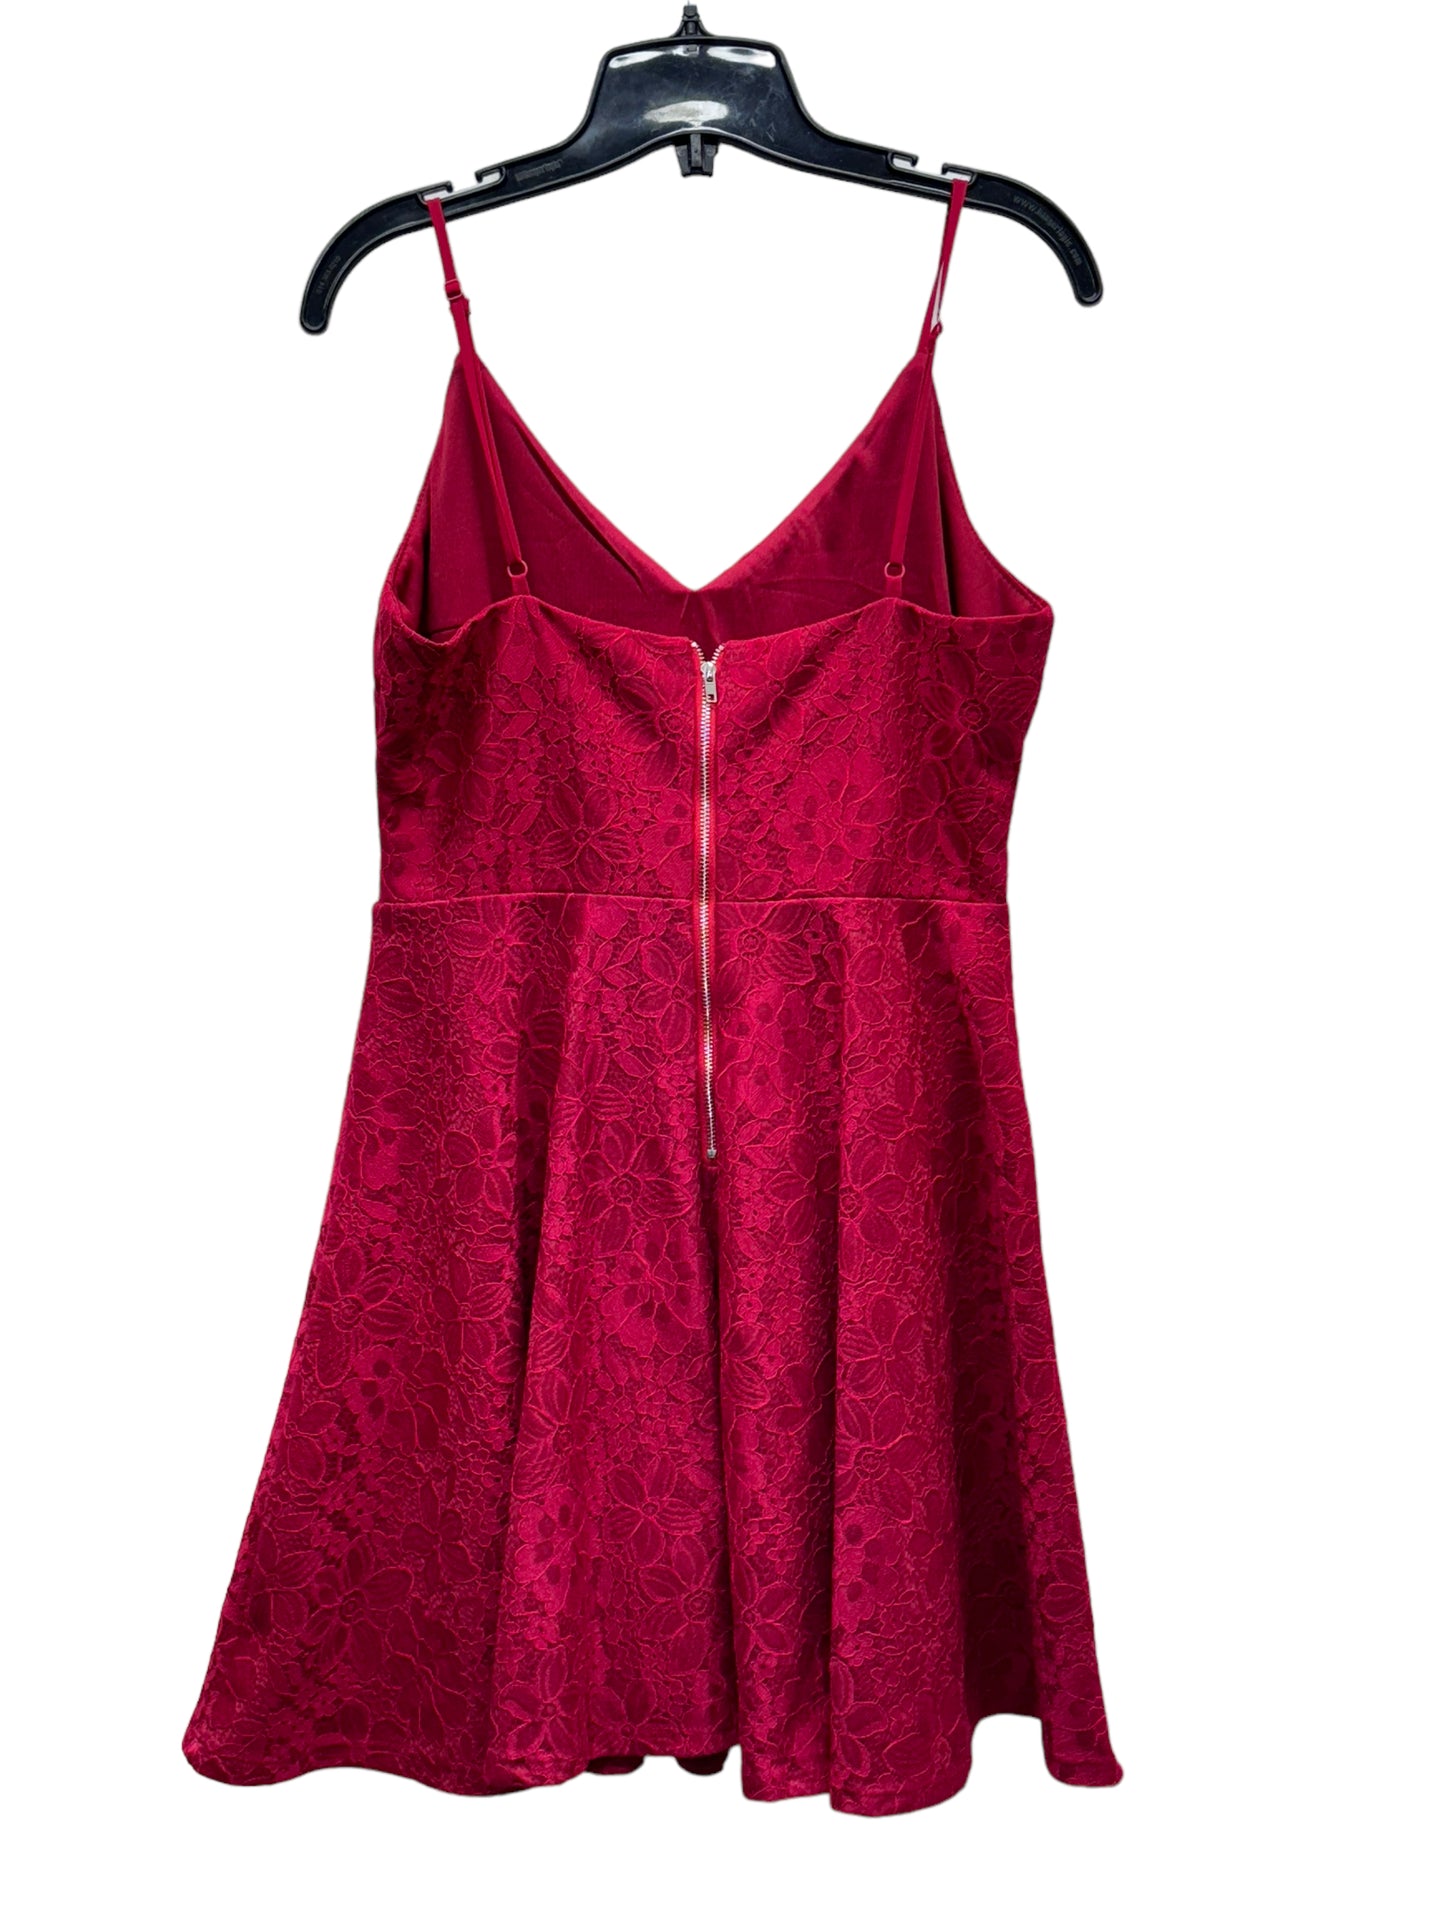 Lulus Women's Full Dress Skirt Red - Size Medium